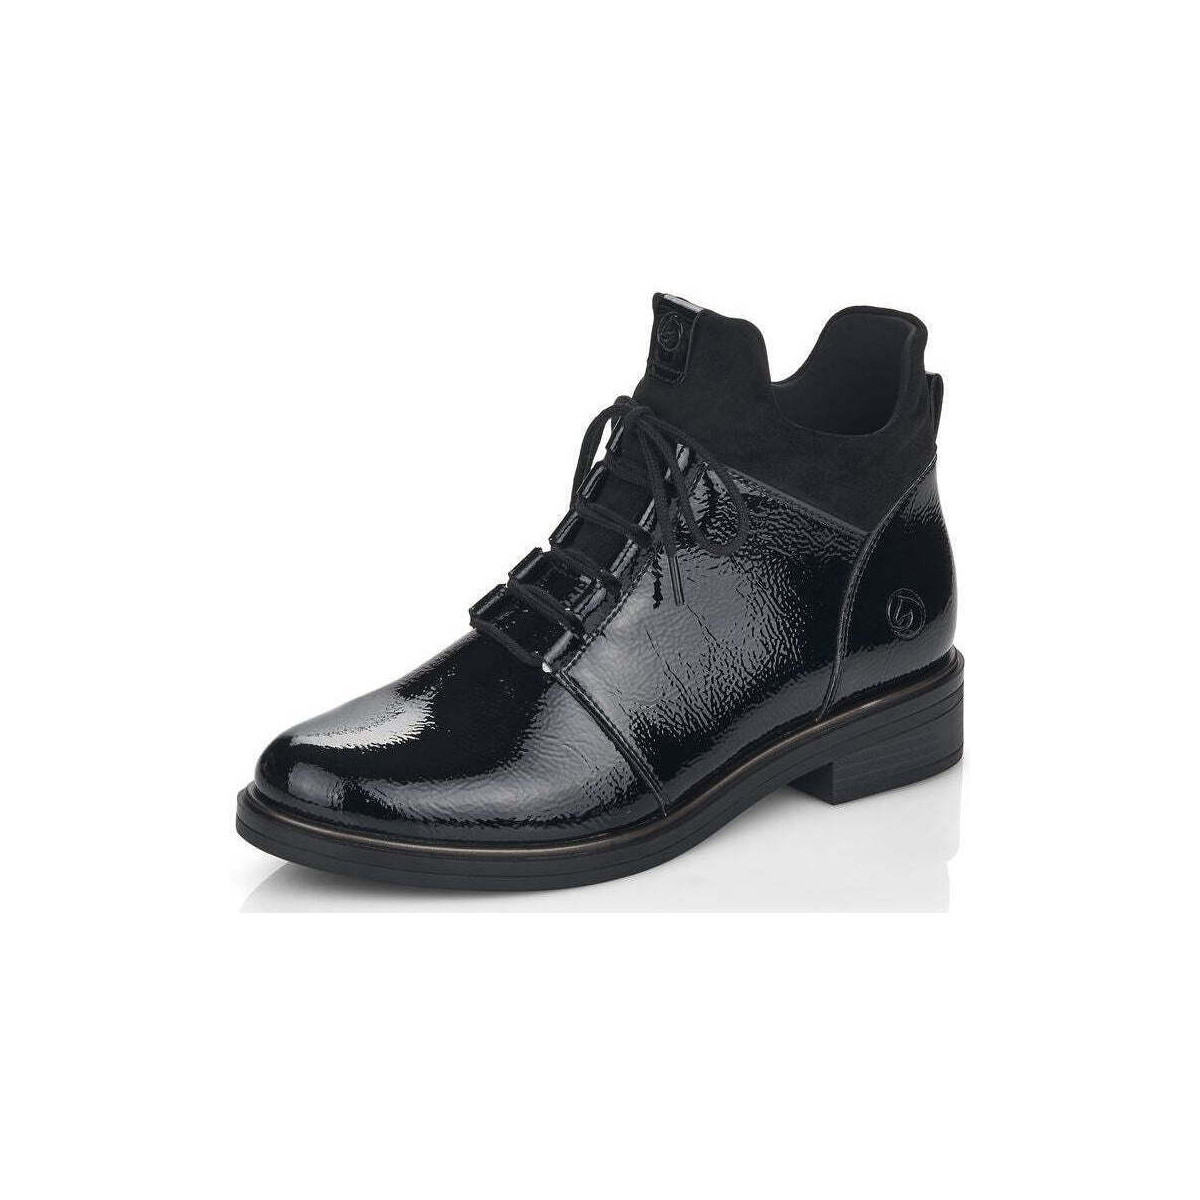 Chaussures Femme Boots Remonte D8379-02 Noir